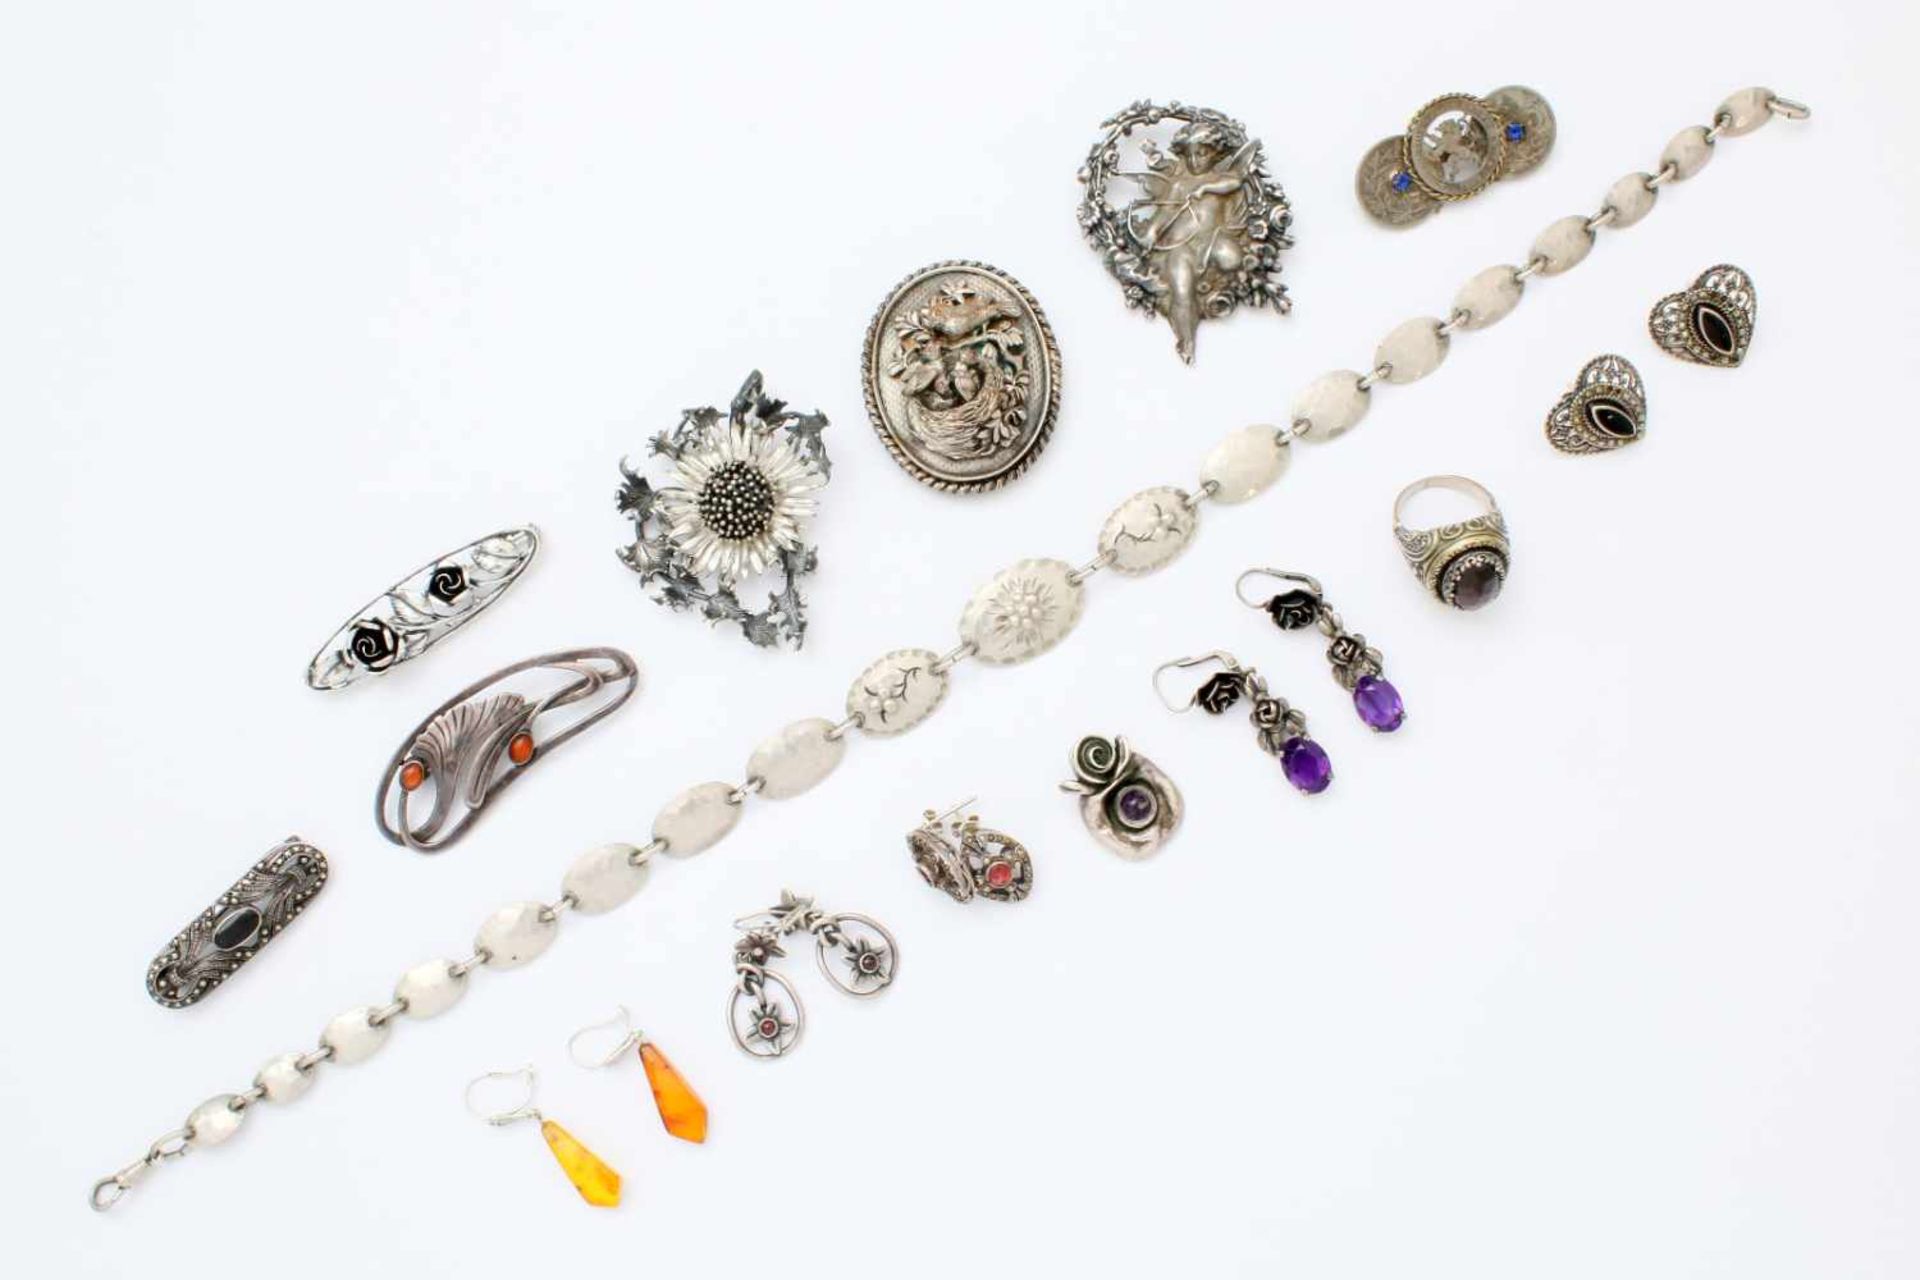 Sammlung Silberschmuck - 20 Teile 7 Broschen, 5 Paar Ohrringe, 1 Ring, 1 Armkette, 1 Anhänger, tw.